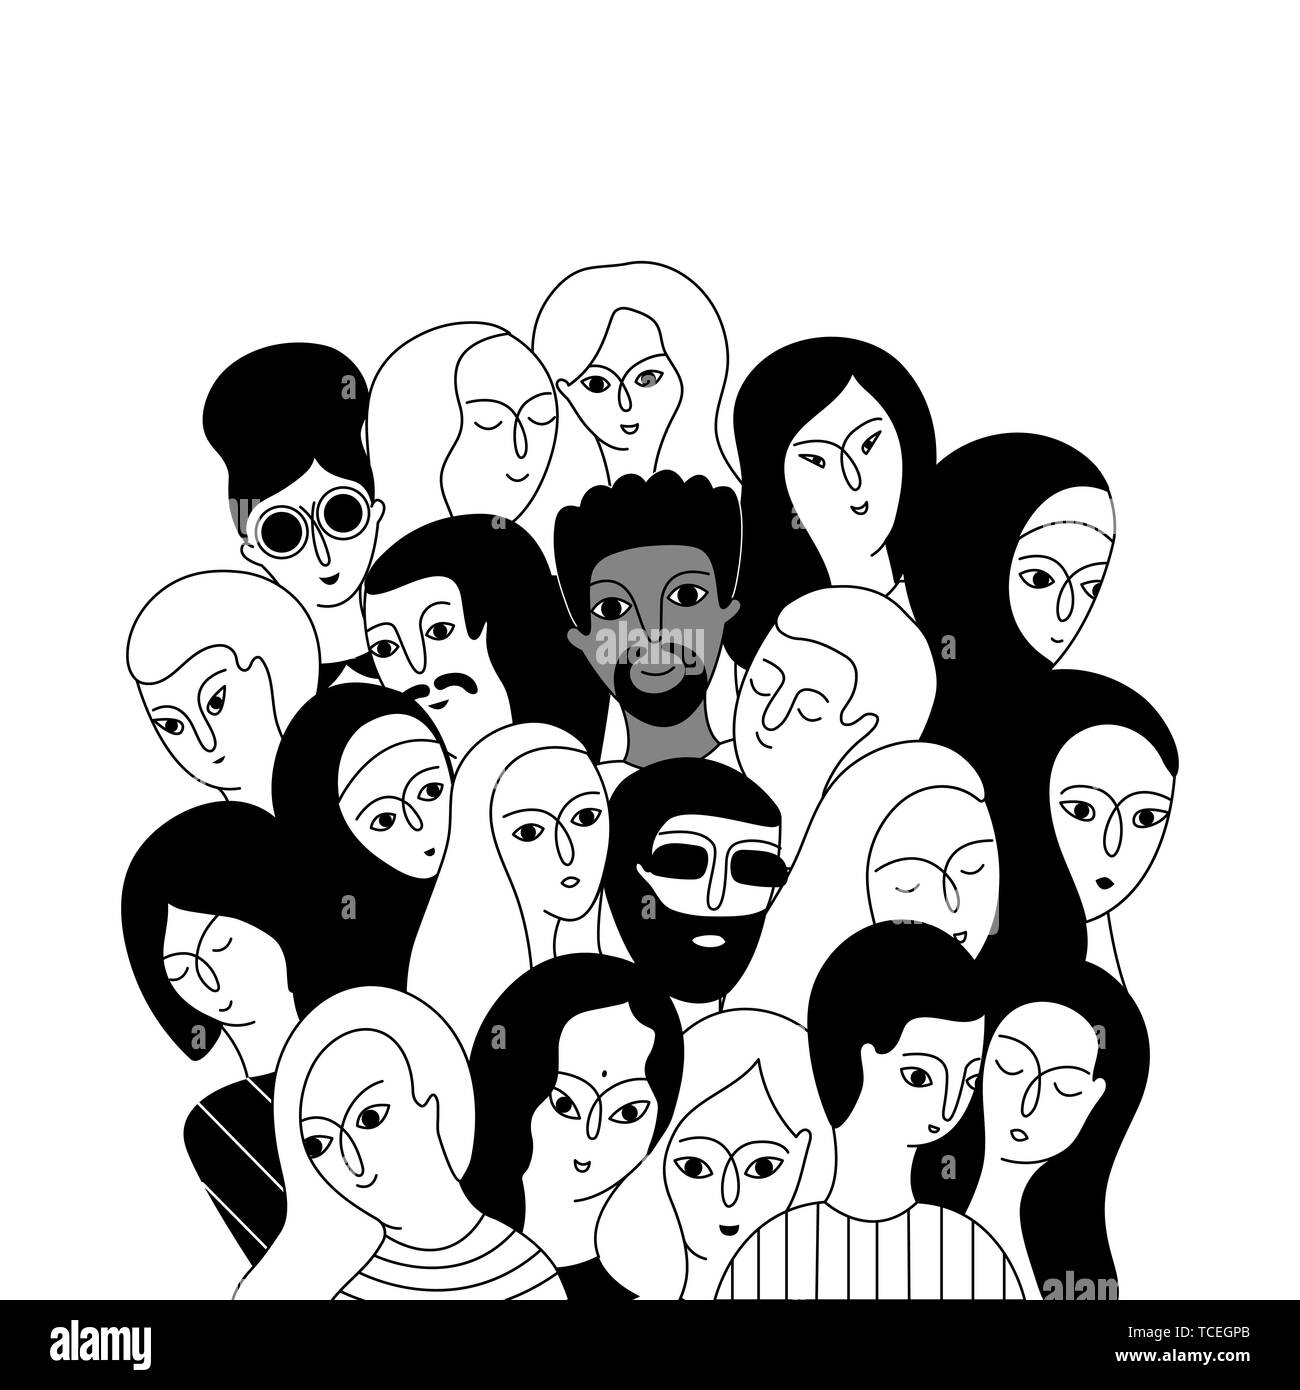 Eine multikulturelle Gruppe von Frauen und Männern (Muslim, Asiatischen, Europäischen, Hindu) auf einem weißen Hintergrund. Soziale Vielfalt. Doodle cartoon Vector Illustration. Stock Vektor